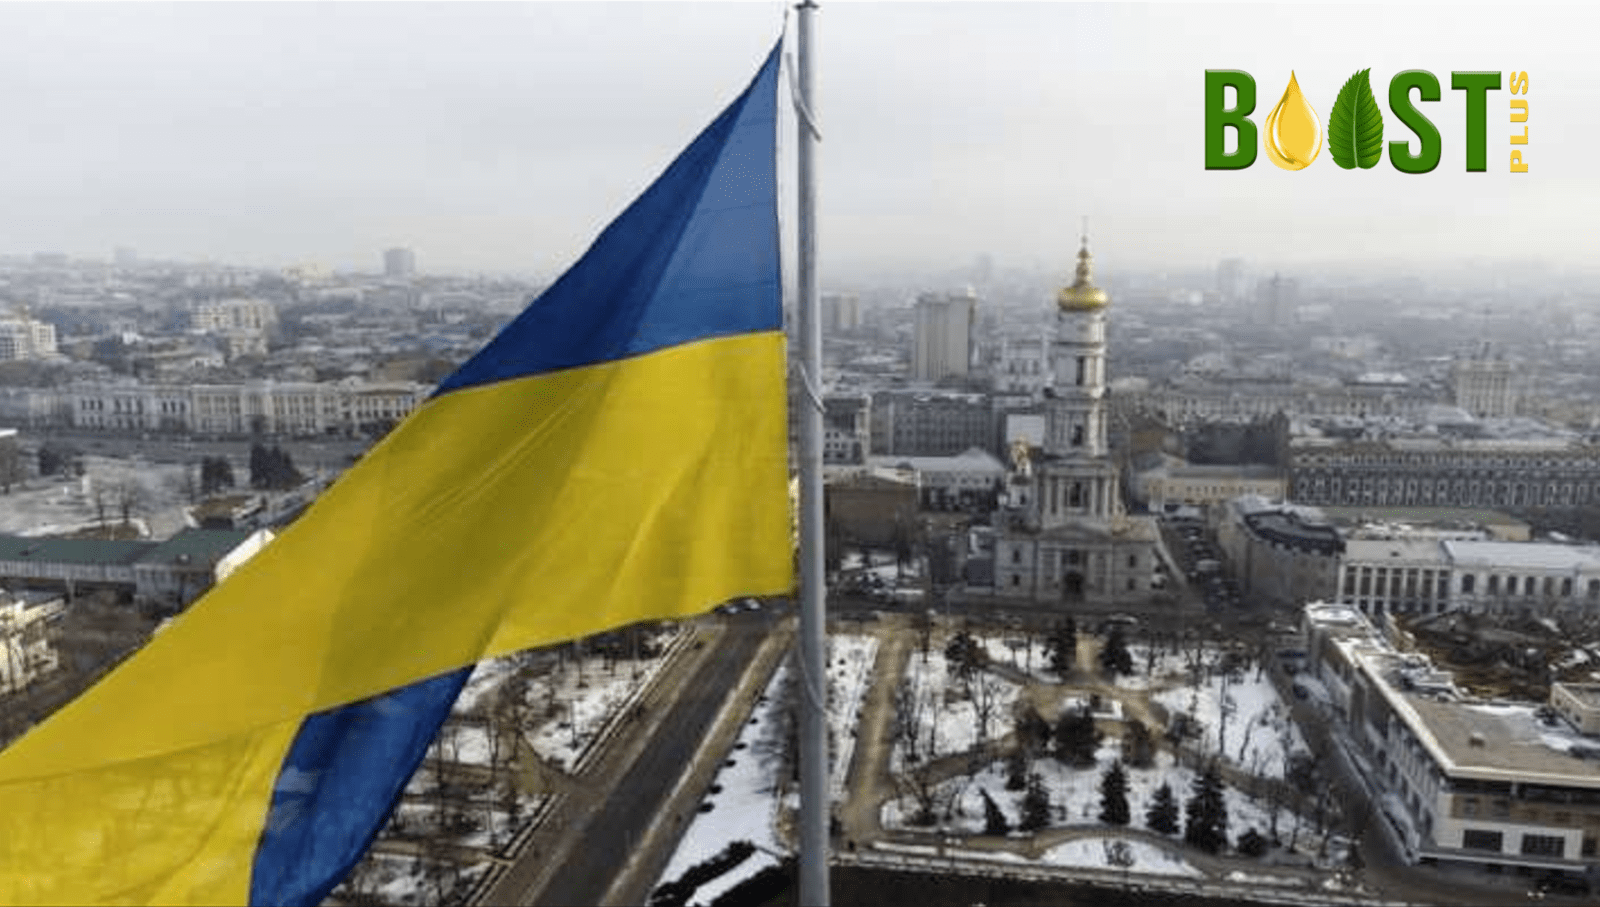 BOOSTplus Biofuel Stands With Ukraine